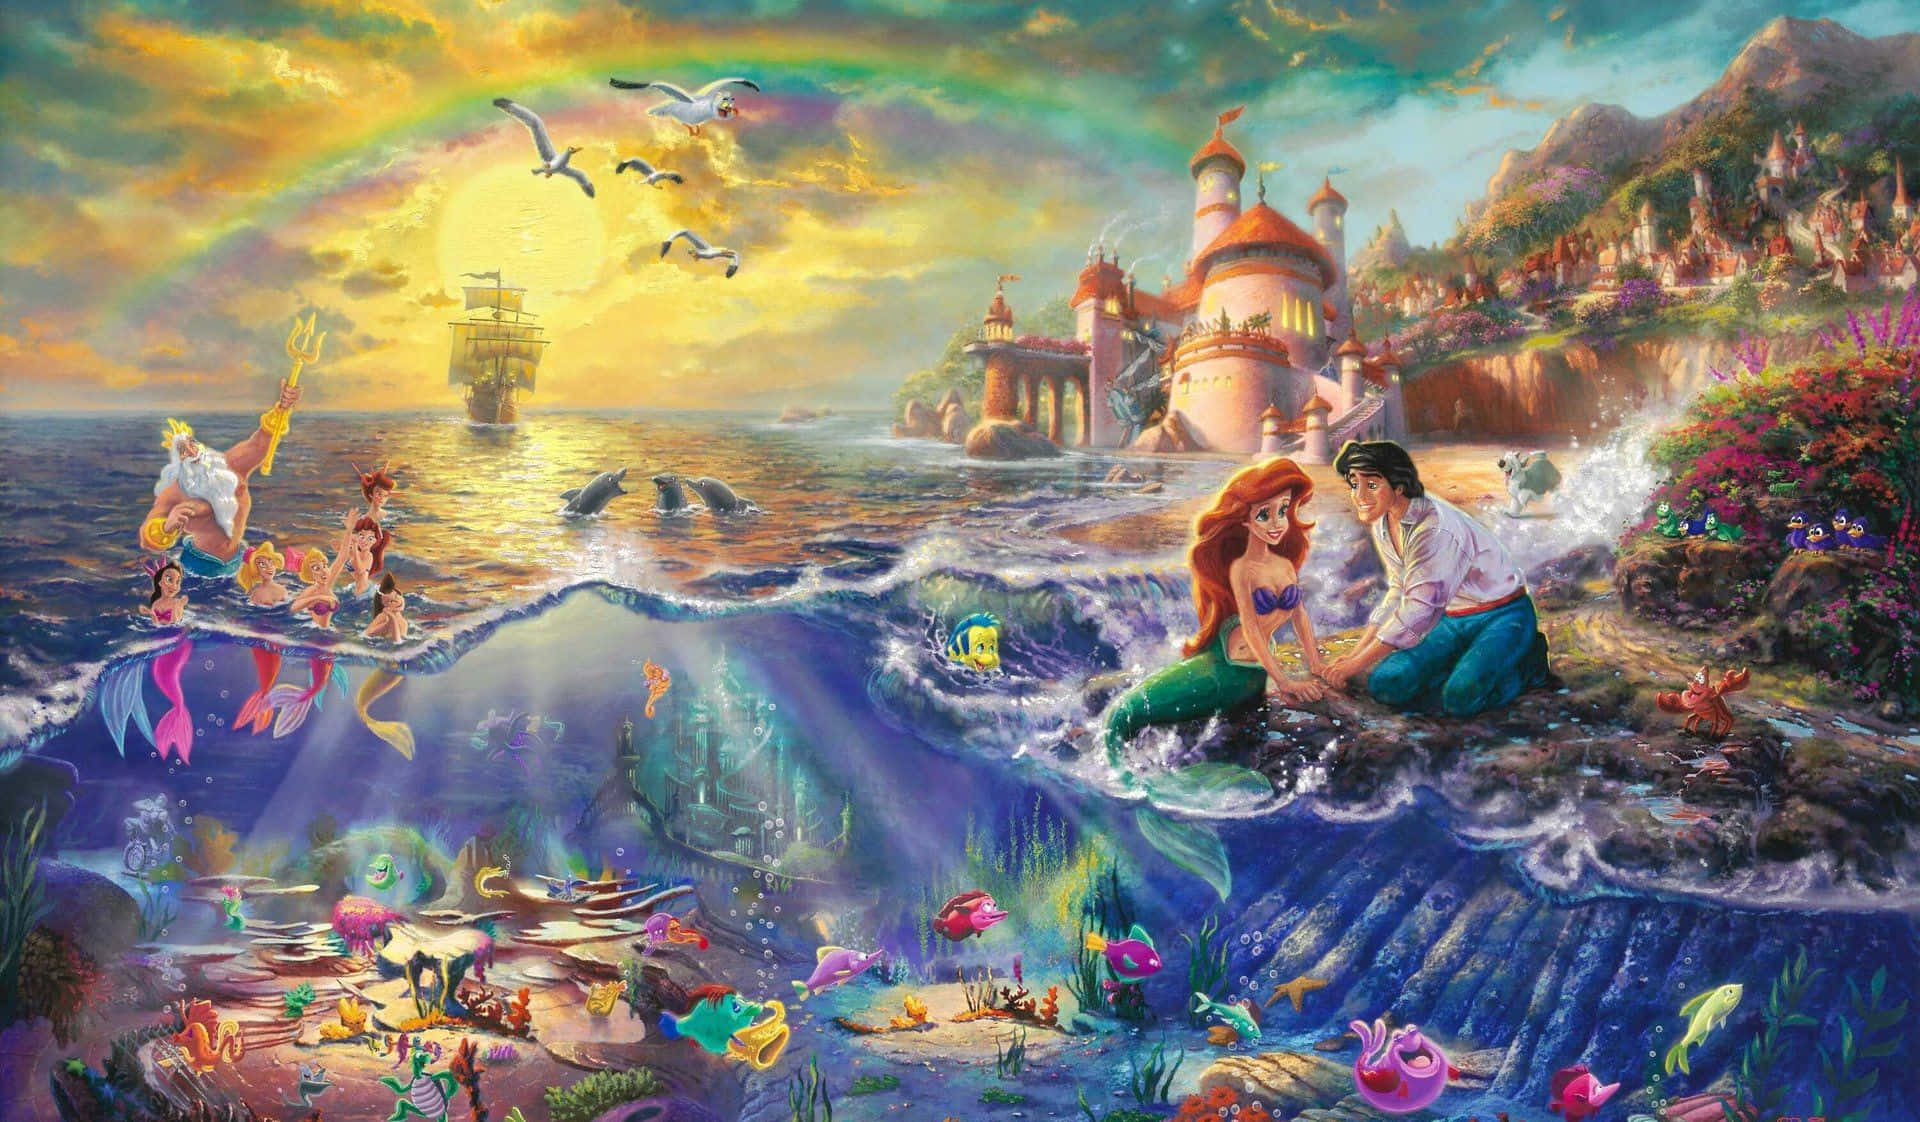 Ariel from Disney's The Little Mermaid Wallpaper